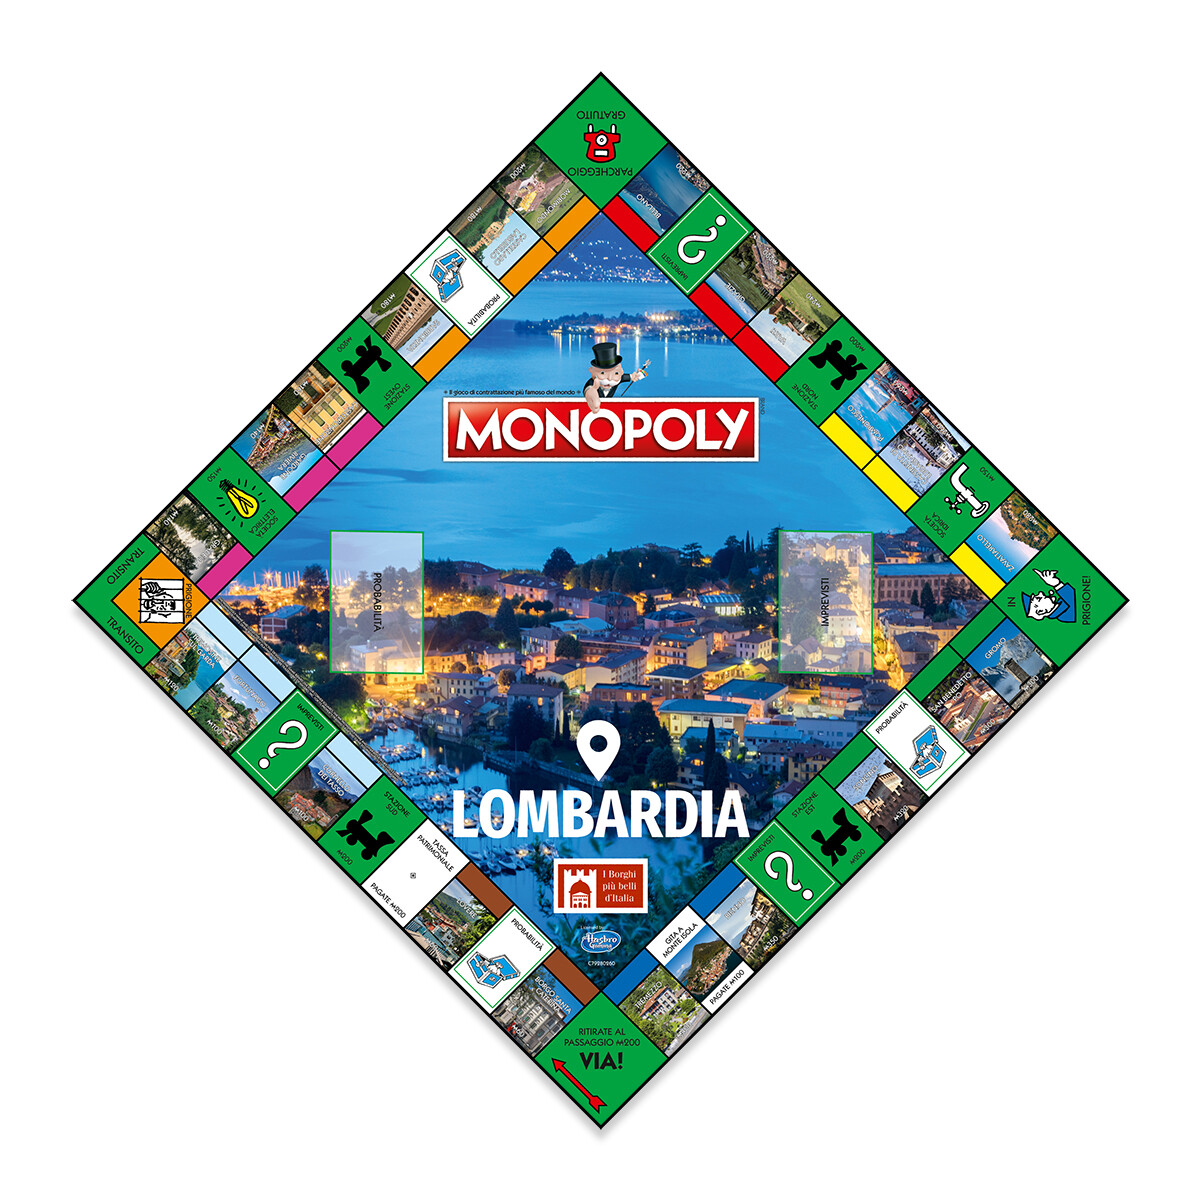 Monopoly - i borghi più belli d'italia - edizione lombardia - MONOPOLY